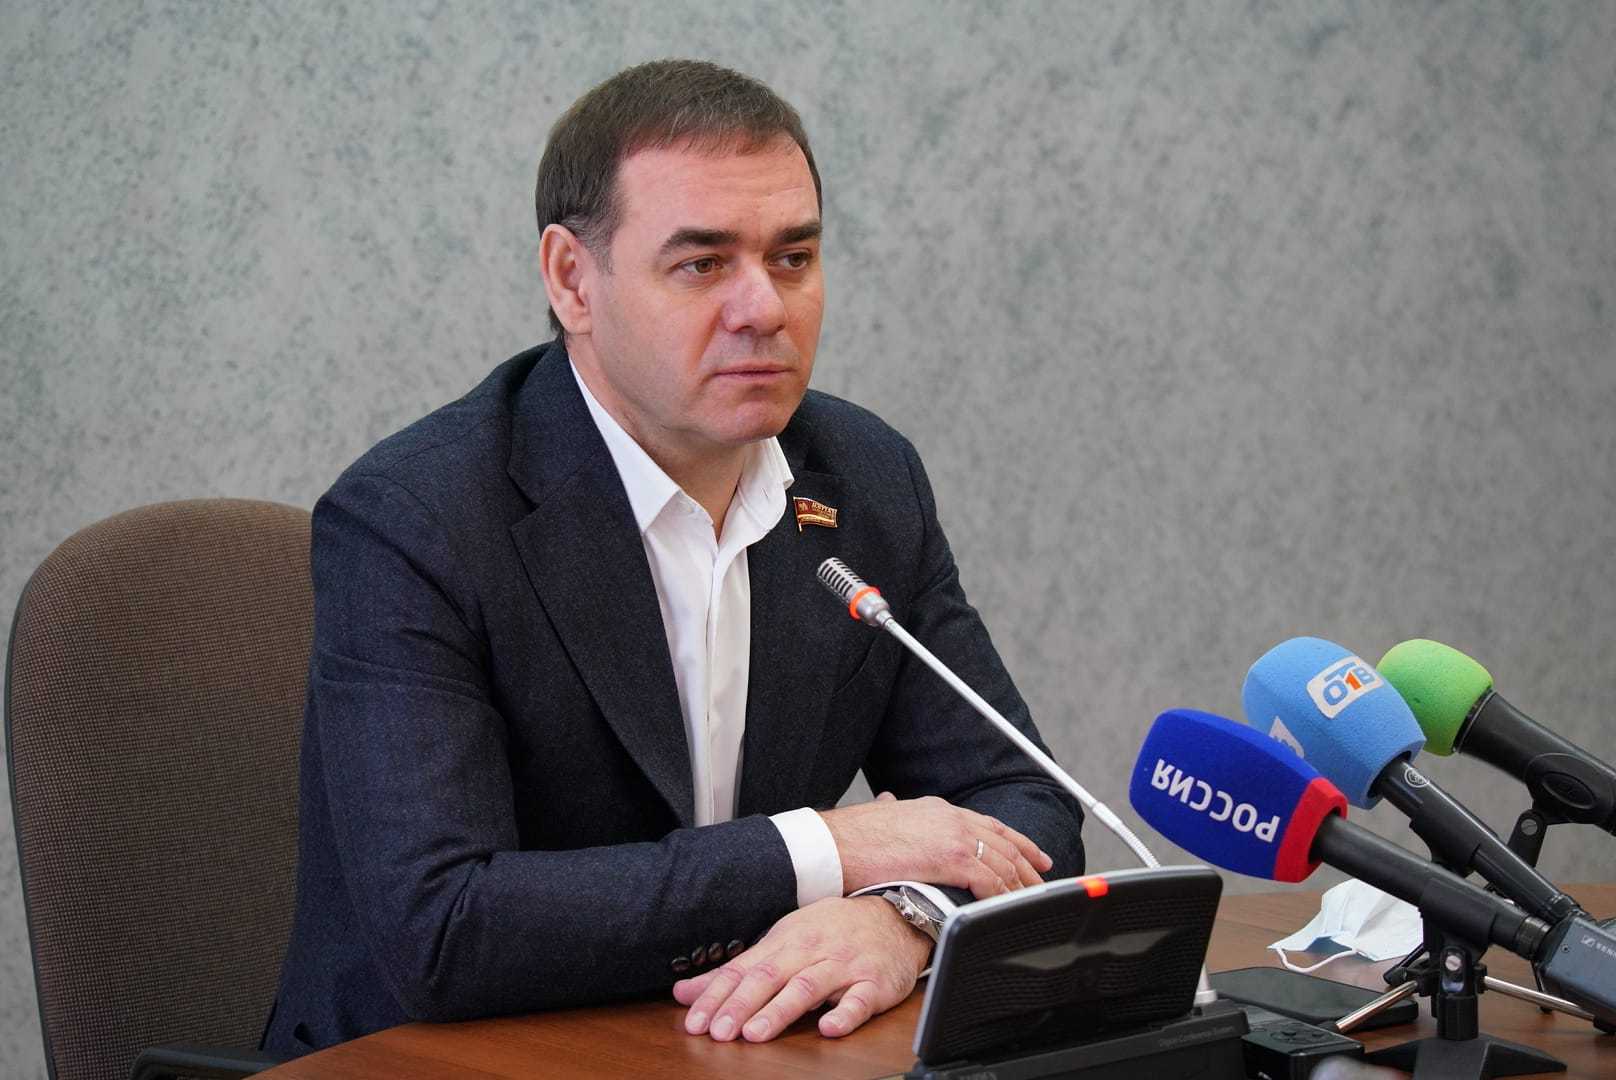 Новое назначение стало сюрпризом для спикера регионального парламента Александра Лазарева